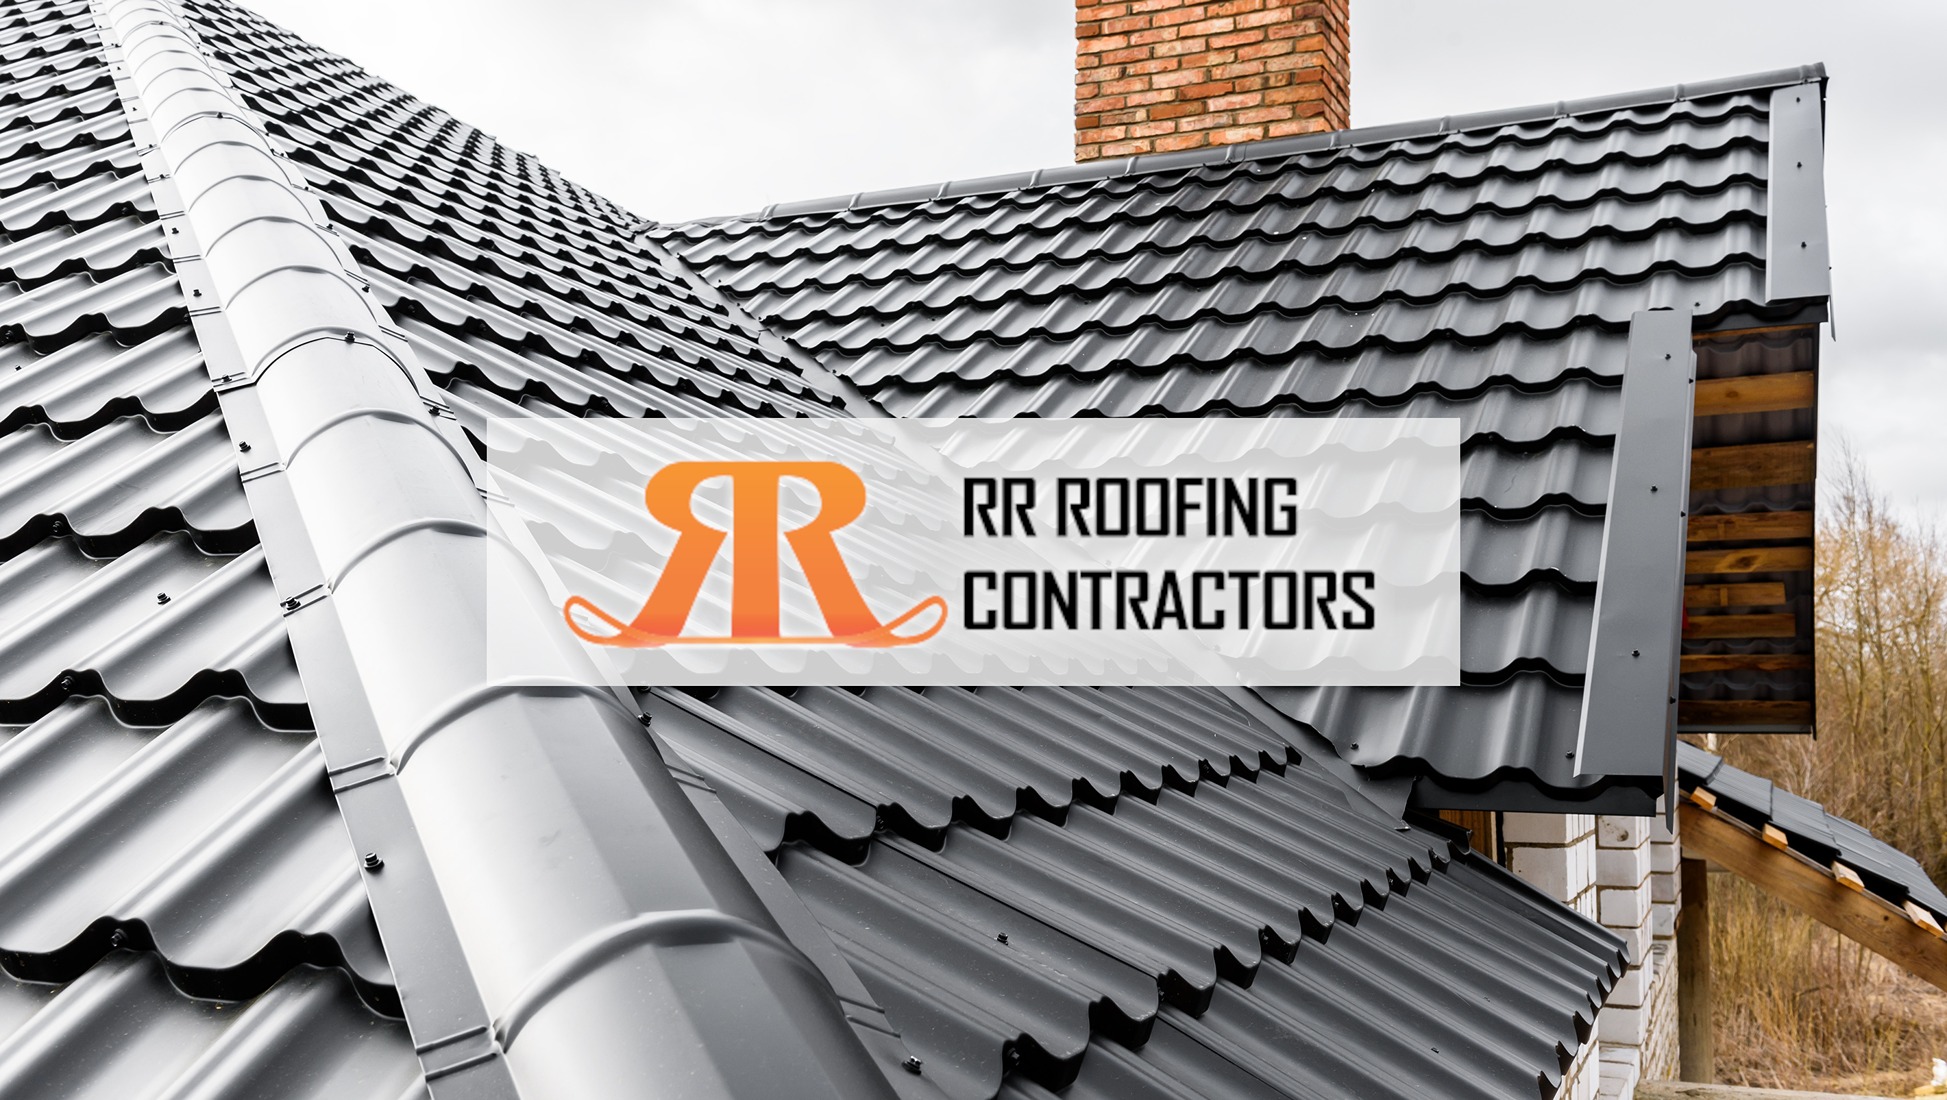 RR Roofing Contractors